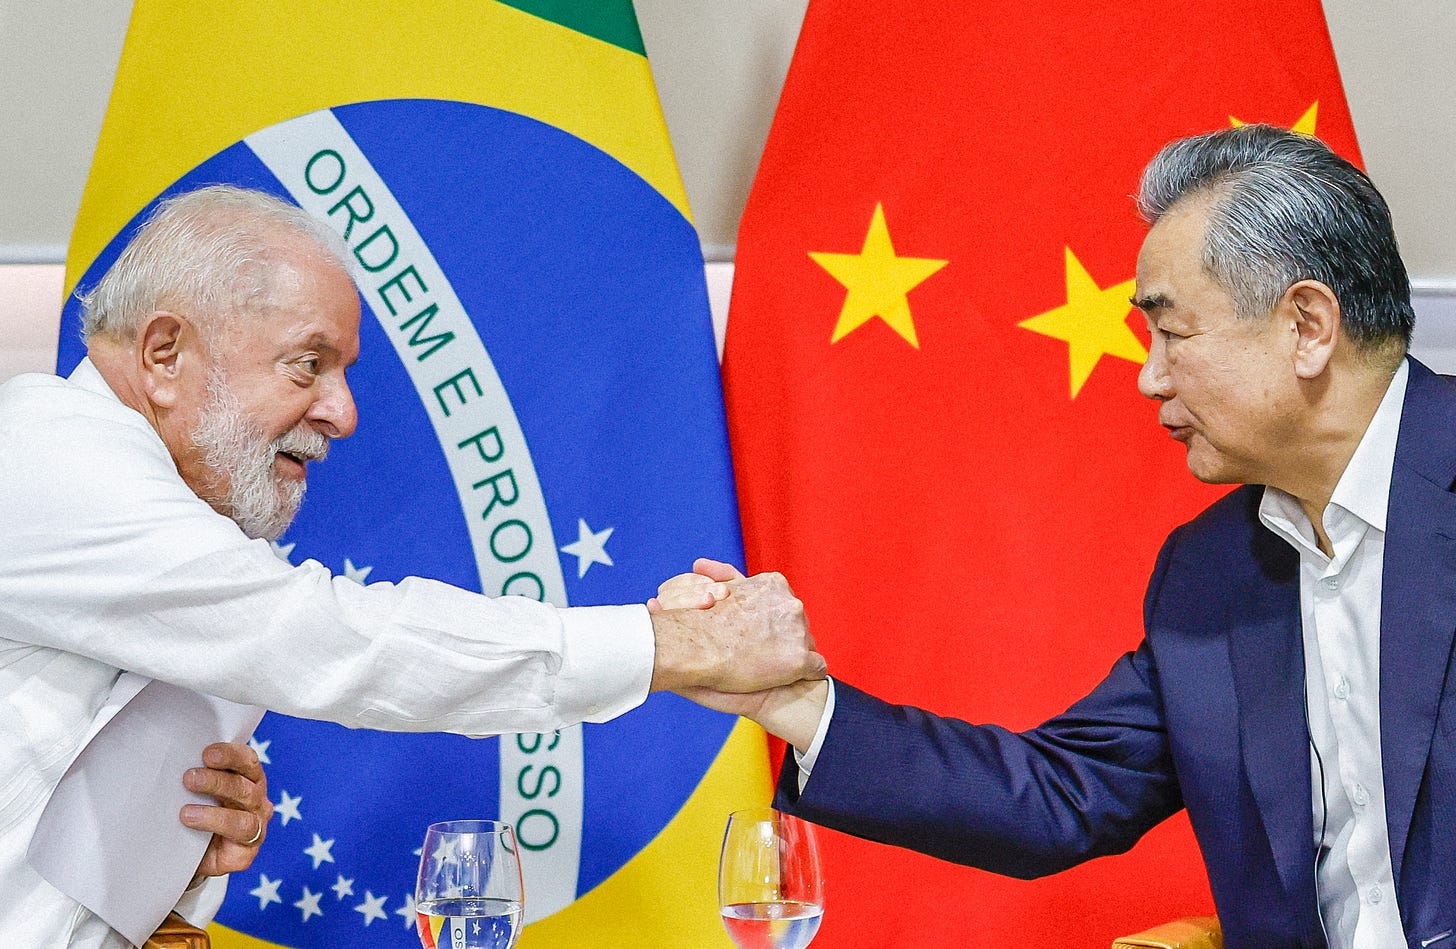 Imagem do presidente Lula vestindo camisa branca e apertando a mão do chanceler chinês Wang Yi, com terno azul marinho e camisa branca, sem gravata. Ao fundo estão bandeiras brasileira e chinesa. Copos de água abaixo deles